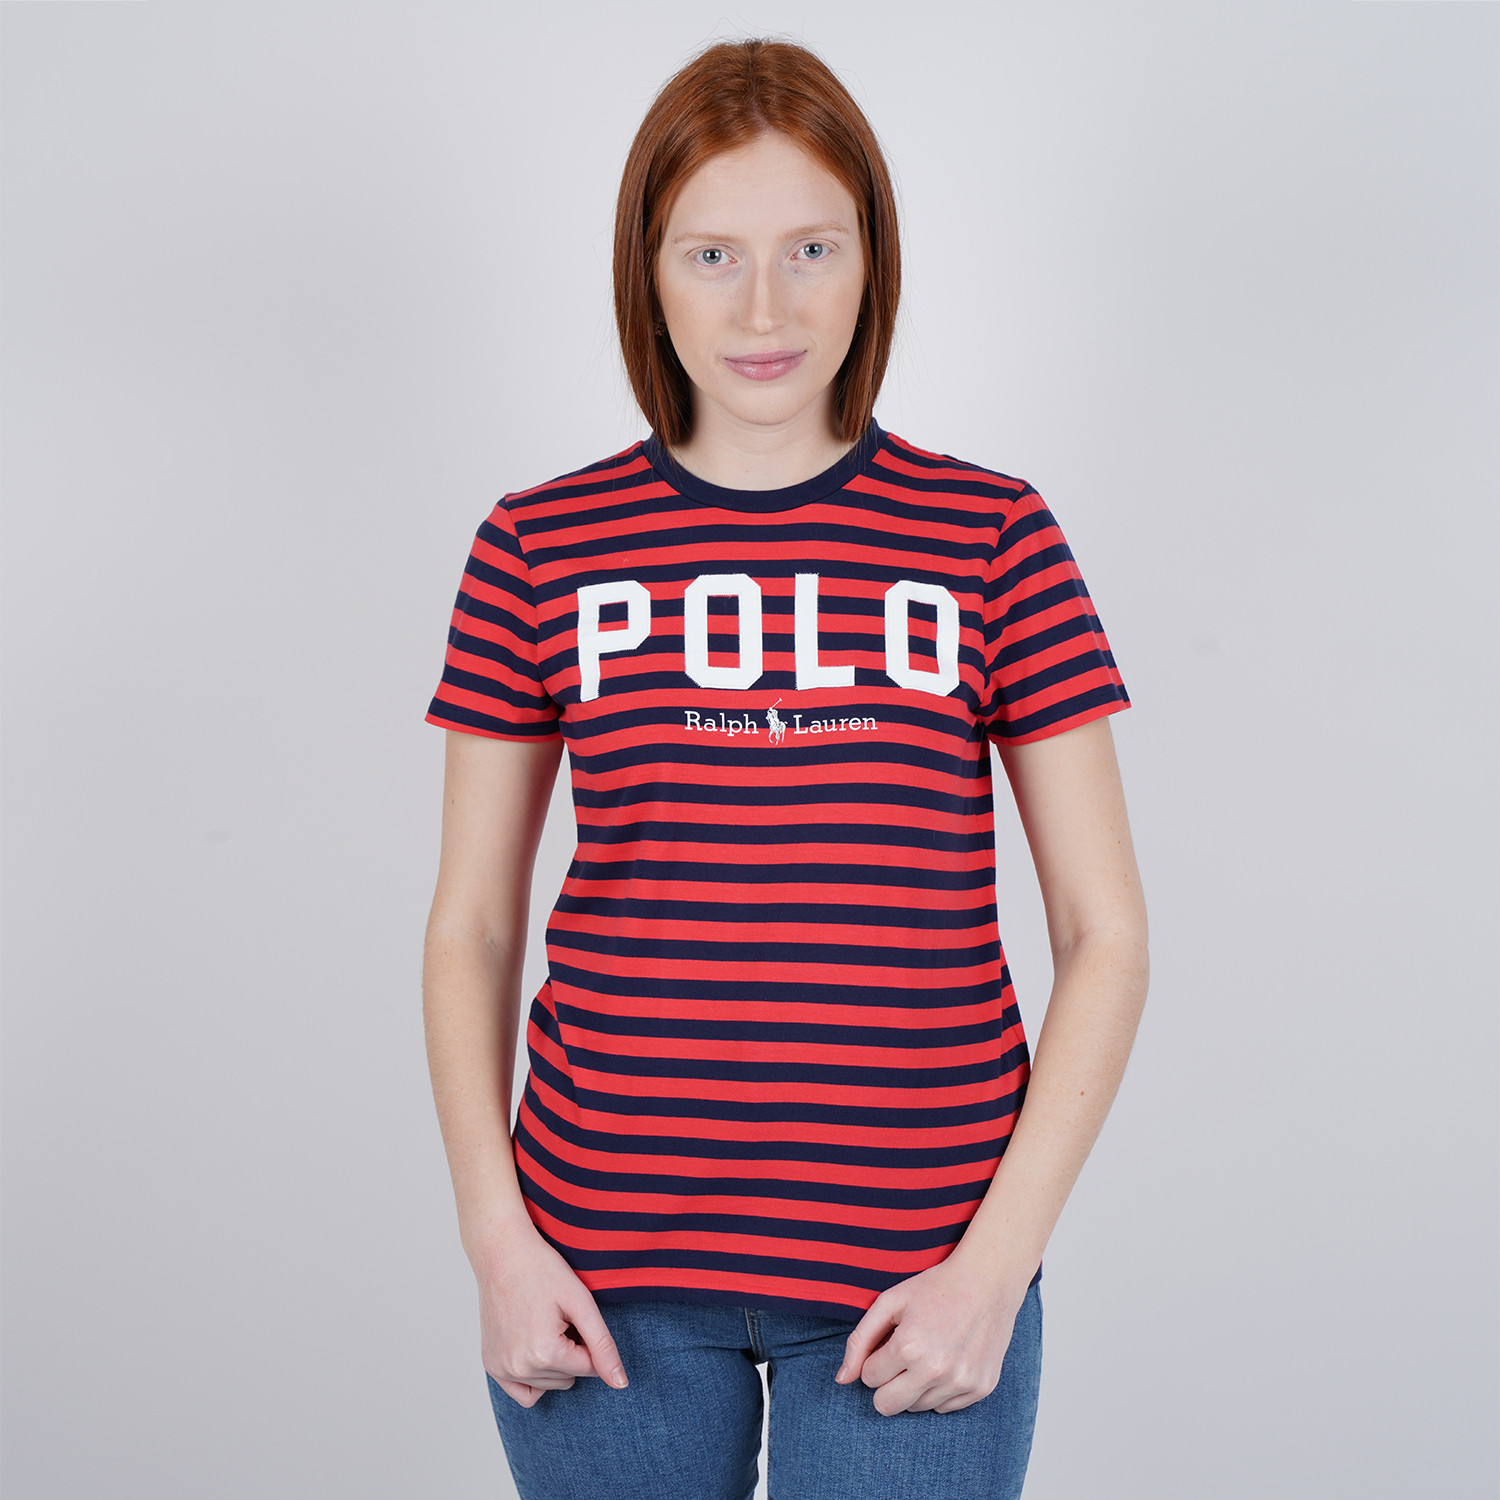 Polo Ralph Lauren Striped Women’s T-Shirt